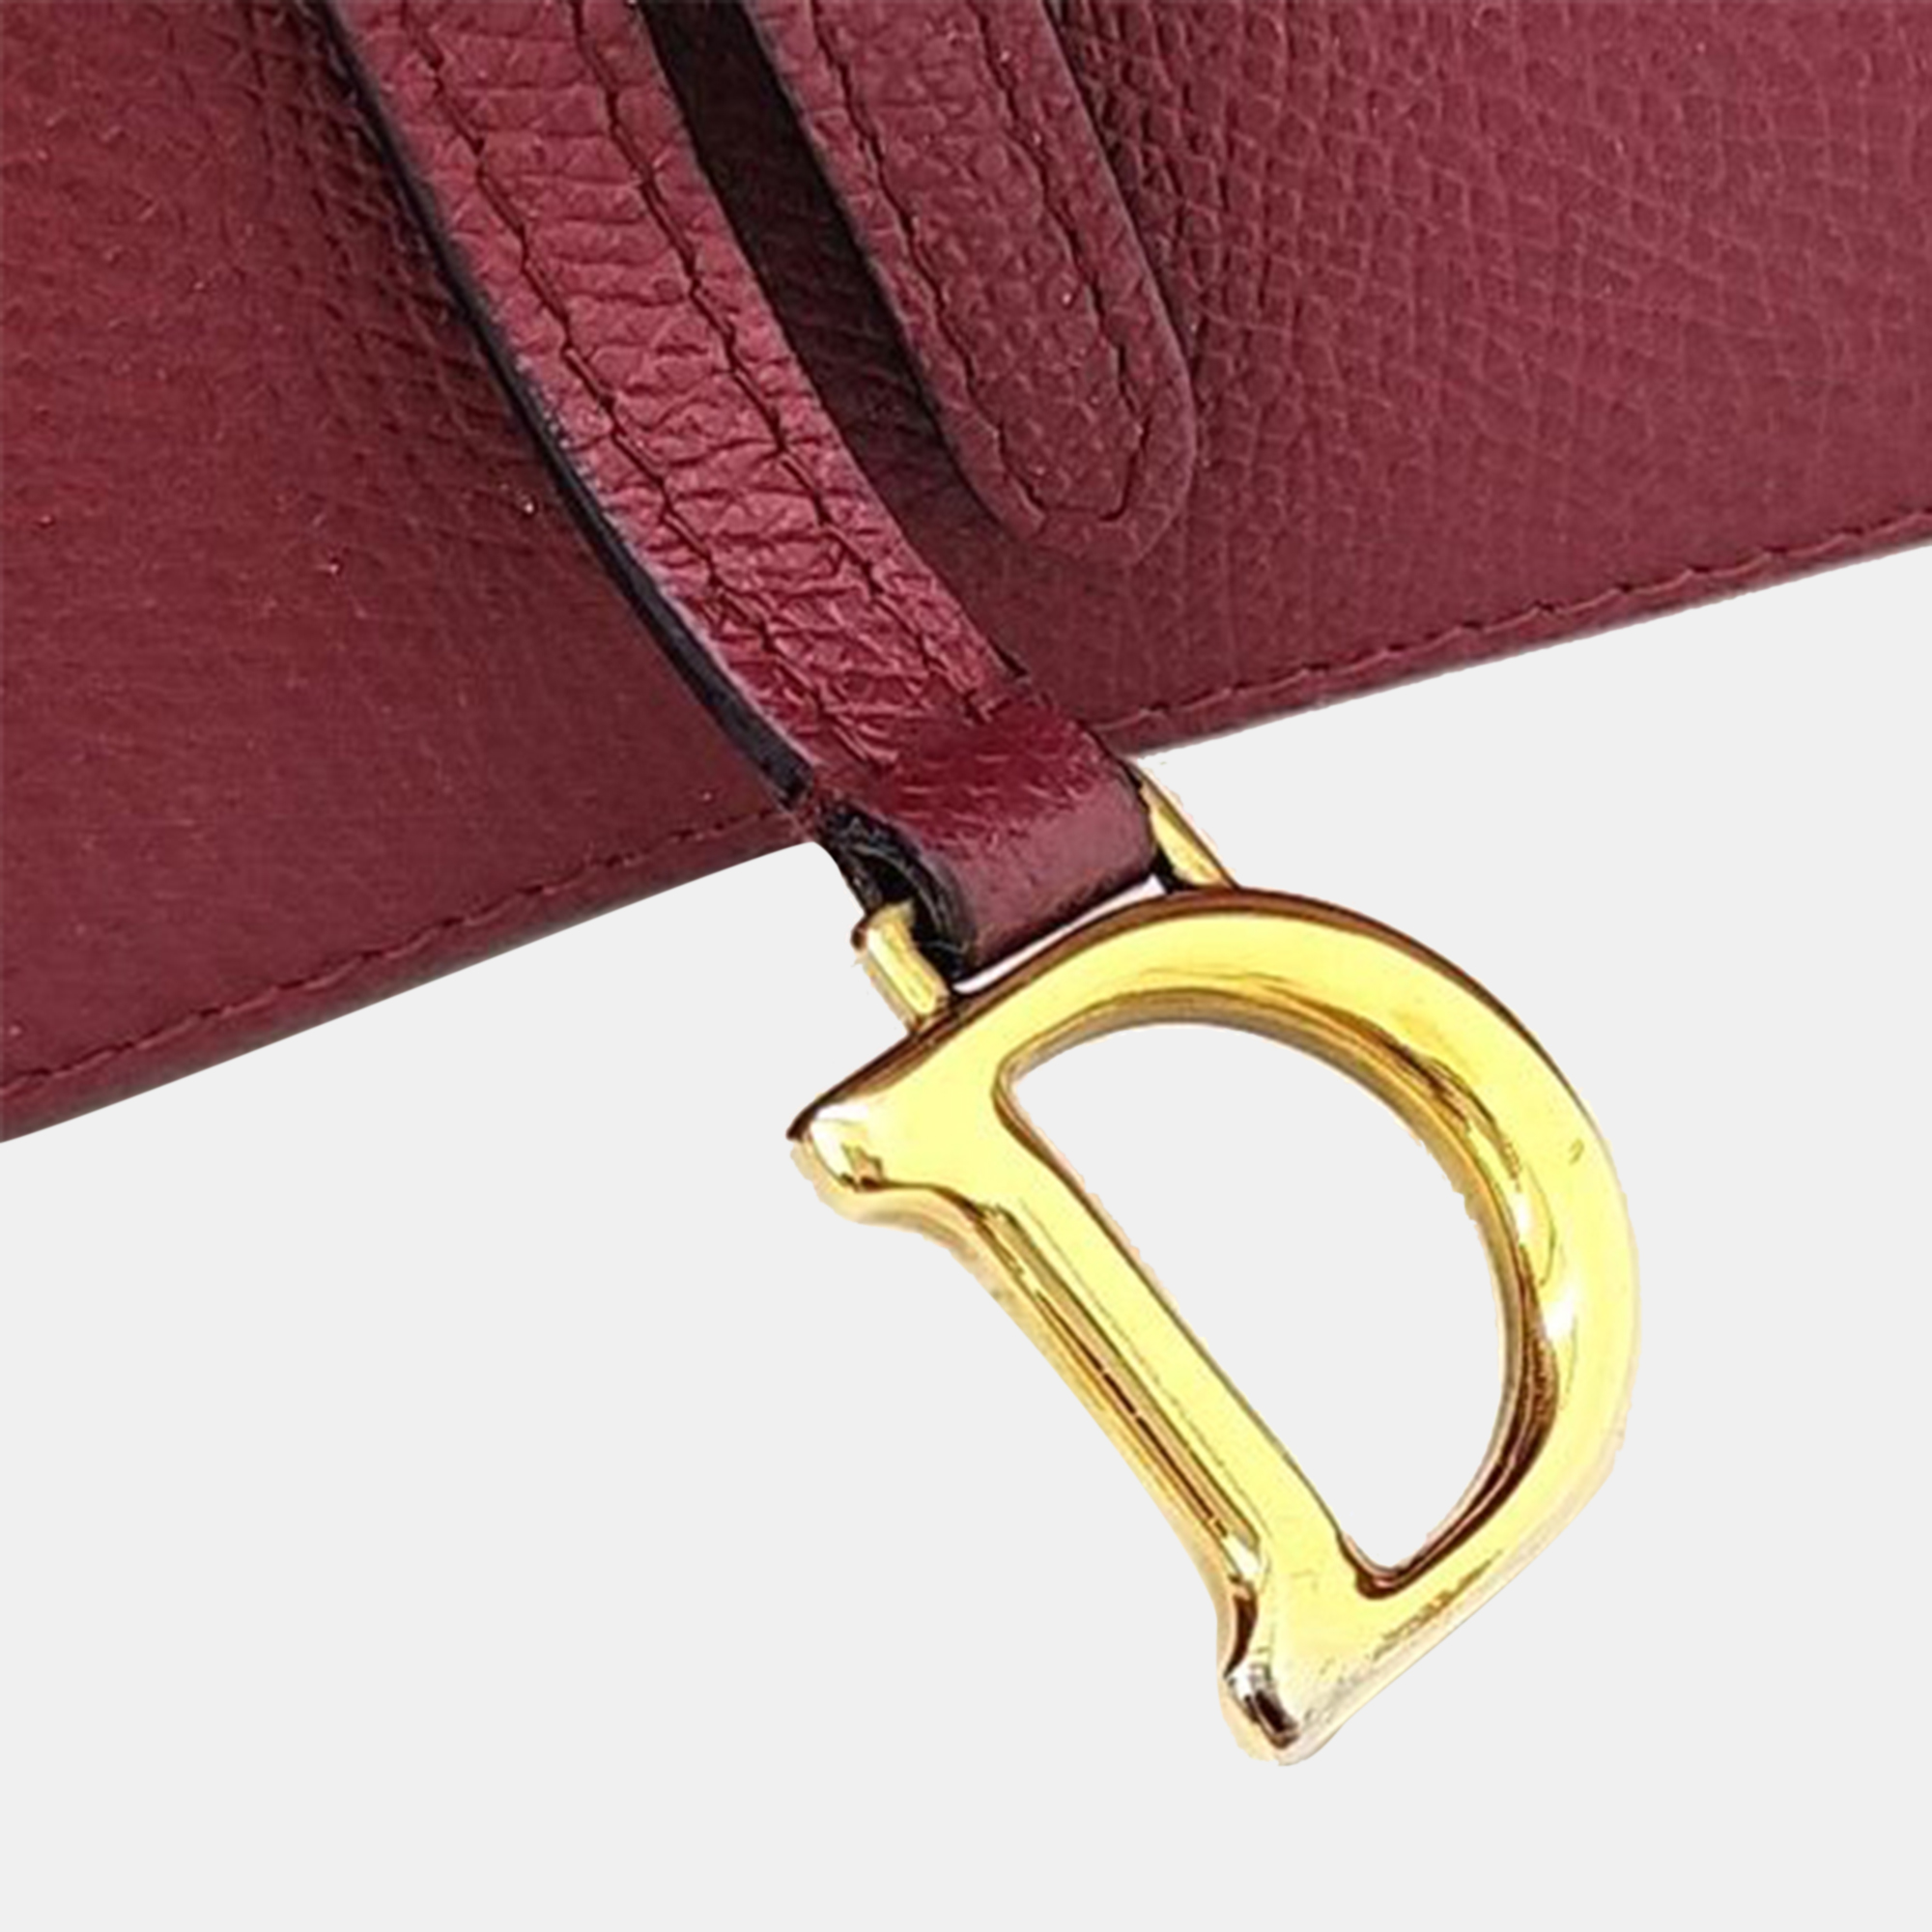 Christian Dior Saddle Chain Cross Bag